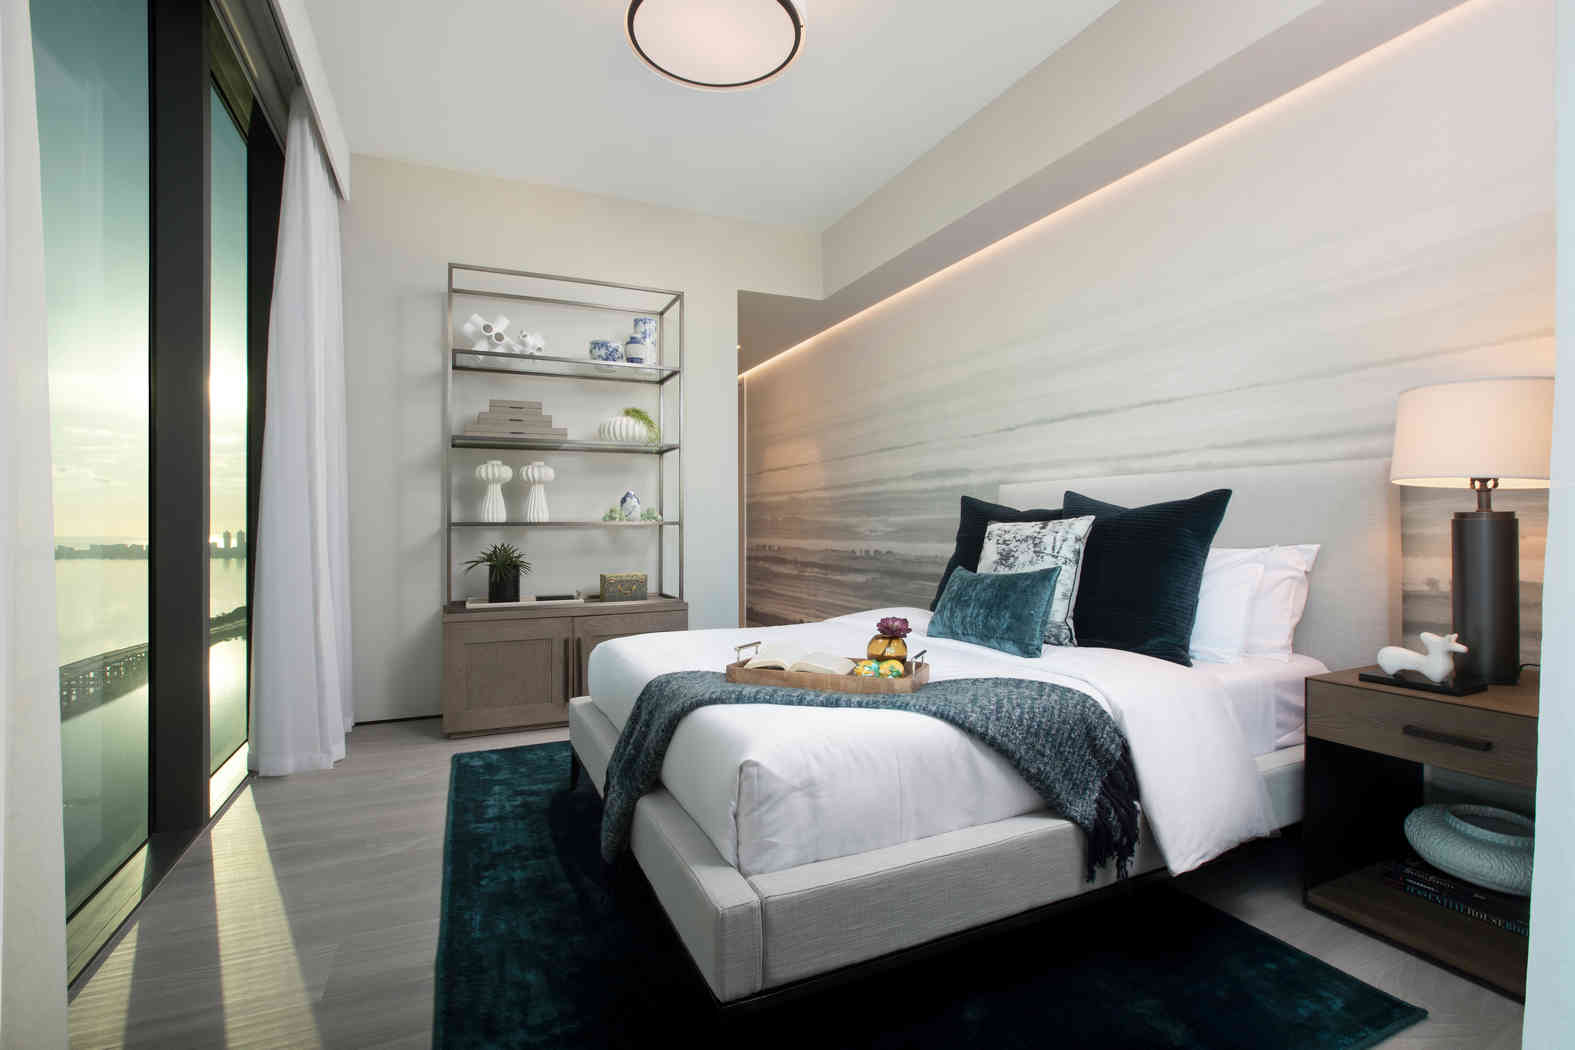 Modern Bedroom Designs - Bedroom Design Inspiration